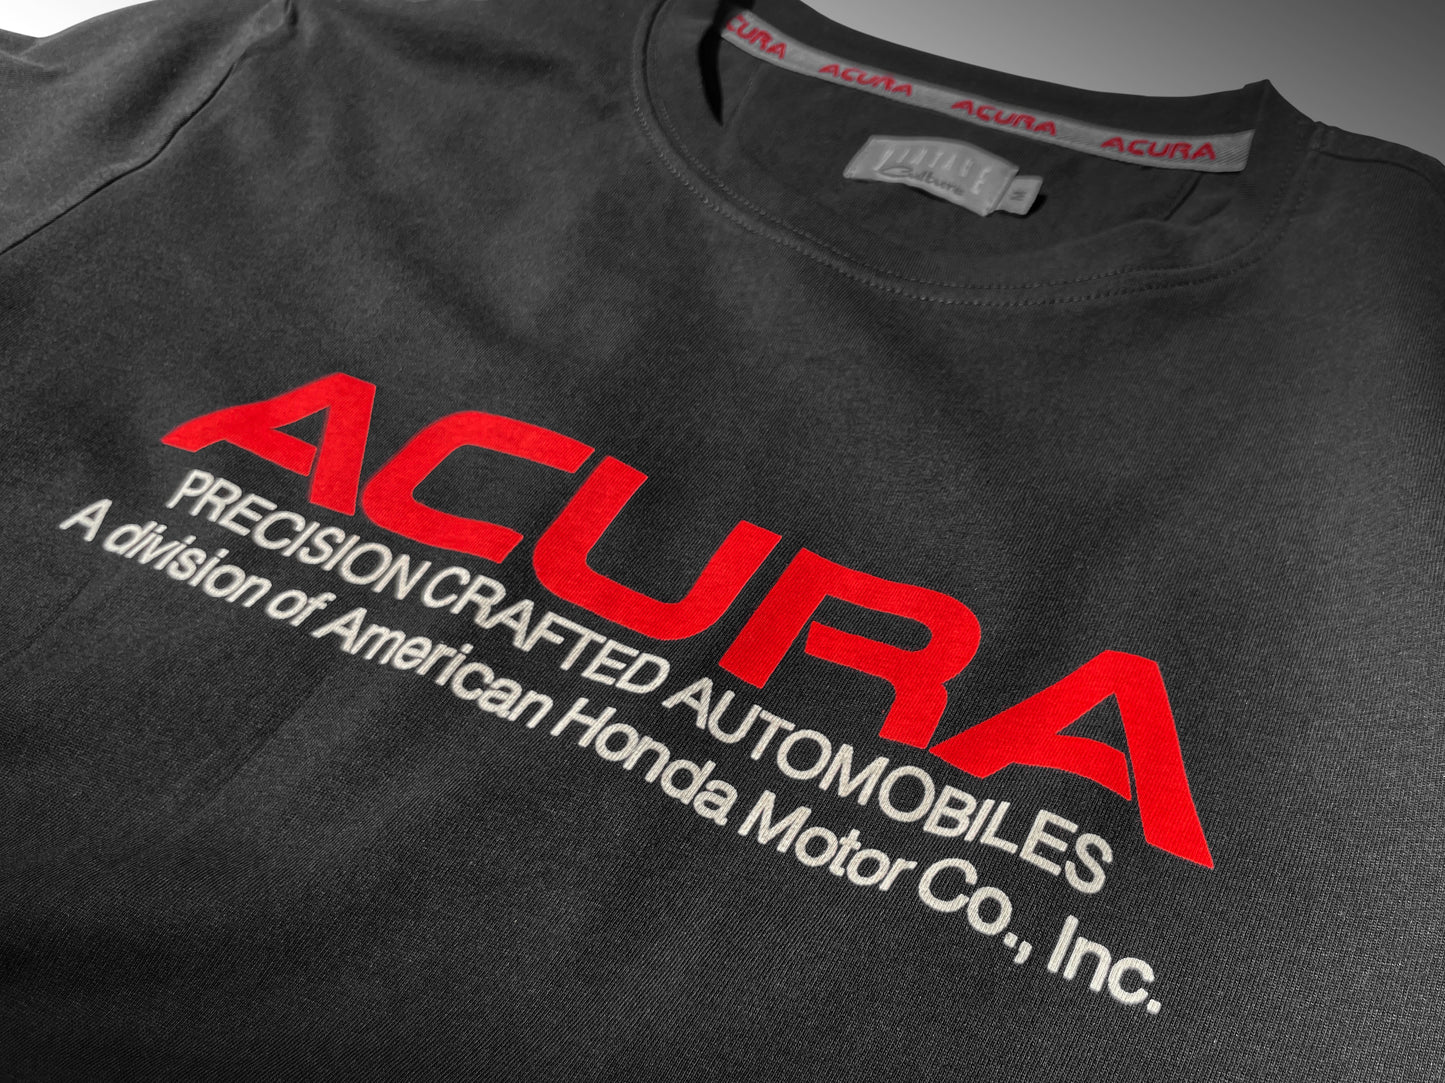 1986 Acura Brand Tee - Black